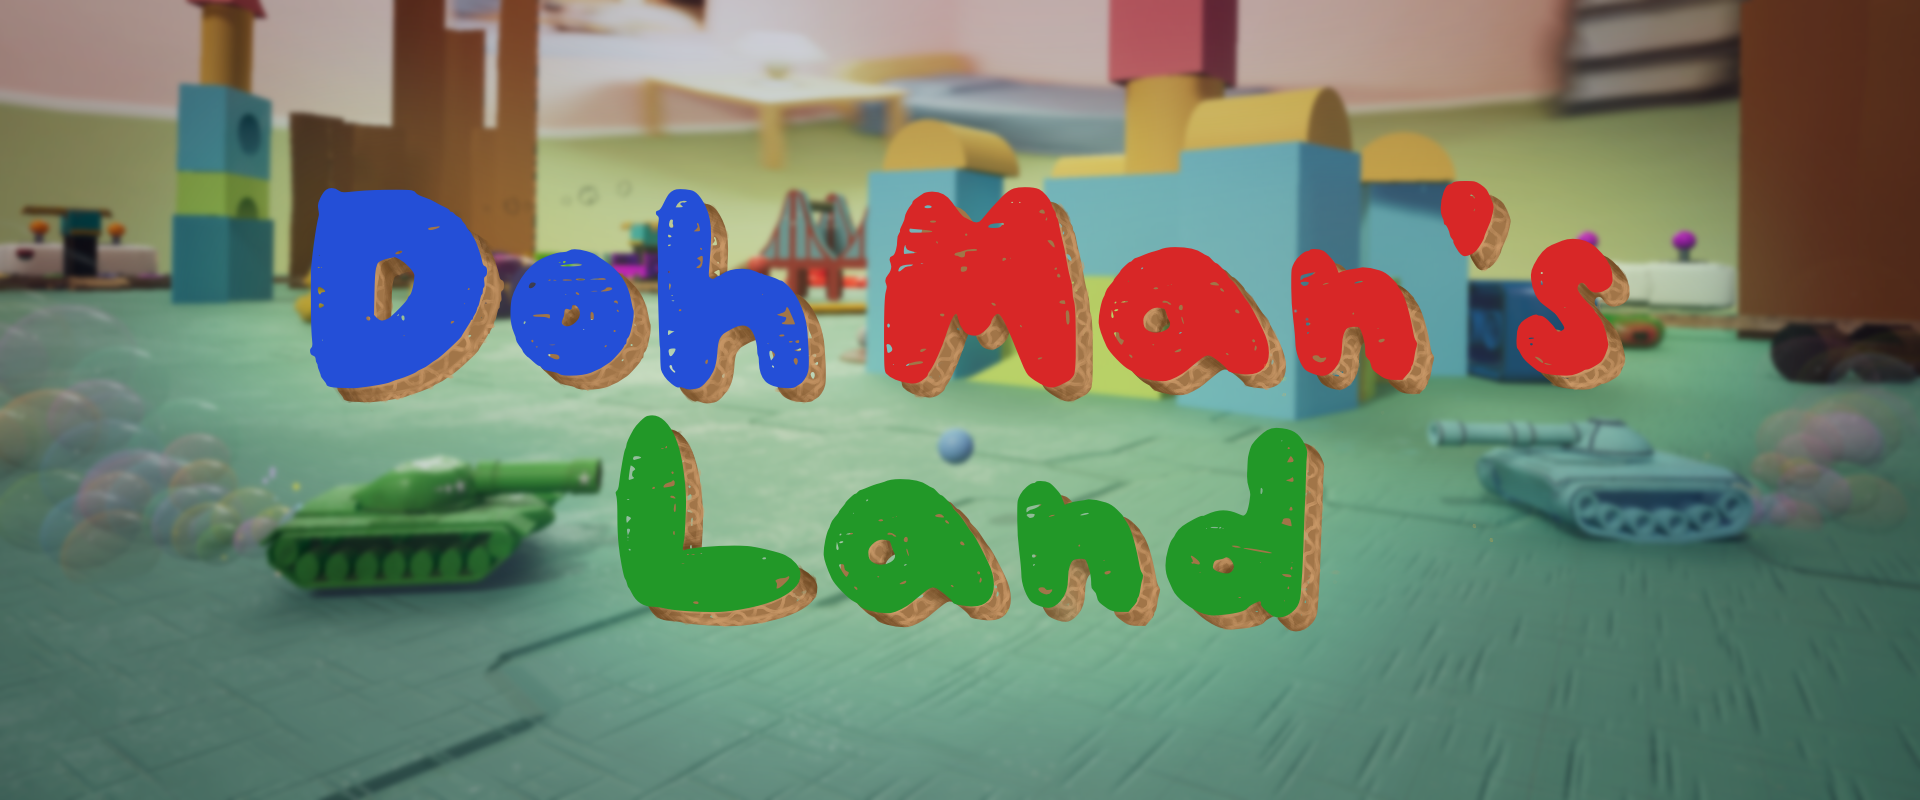 Doh Man's Land